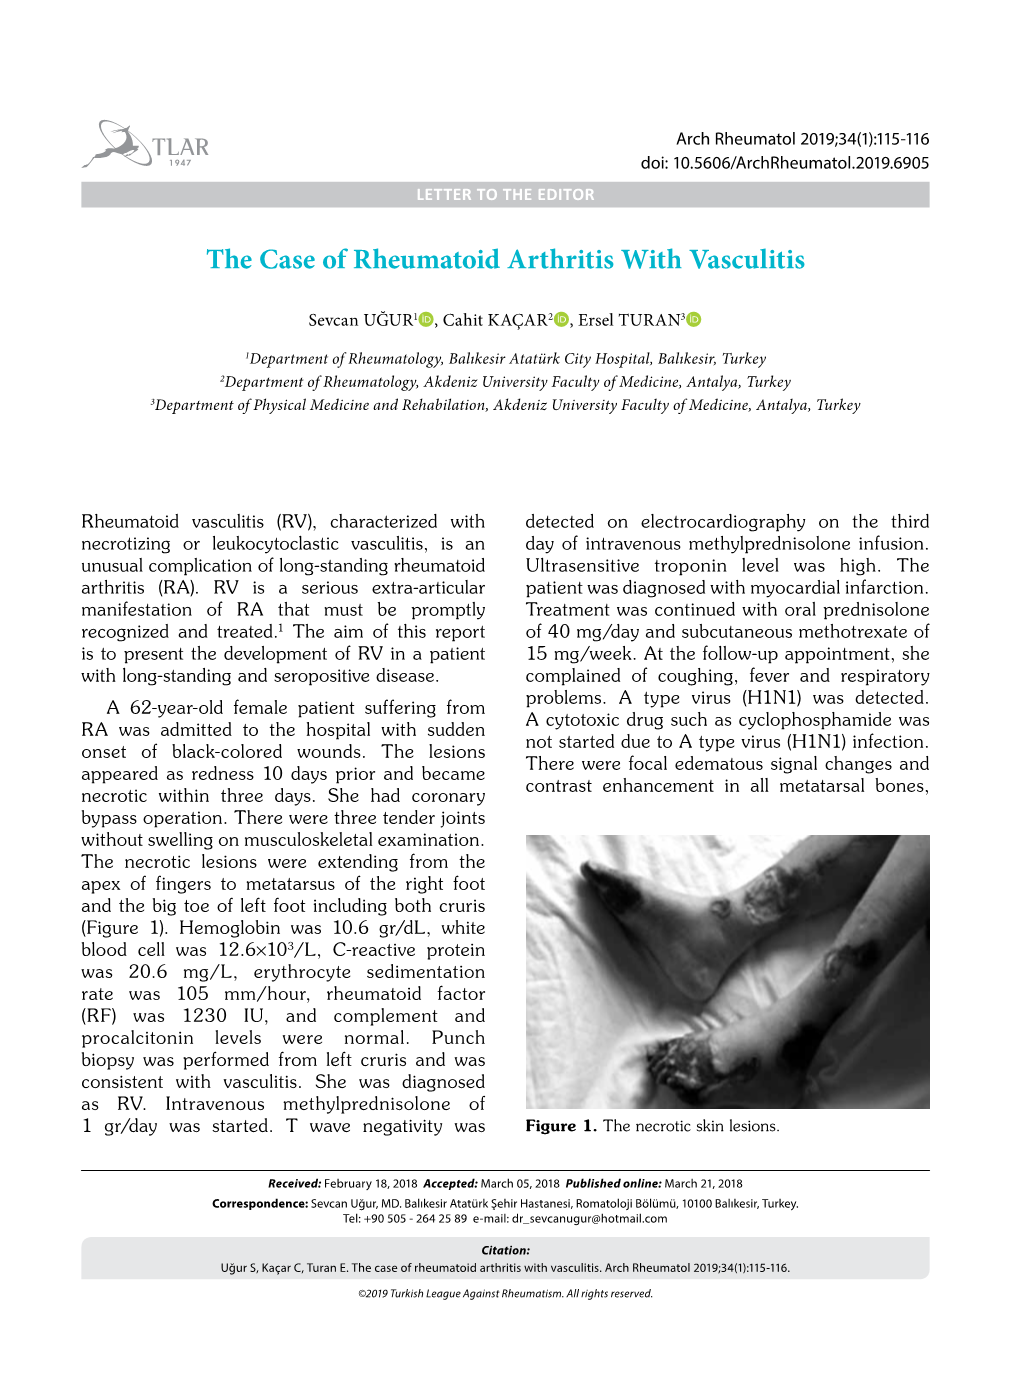 The Case of Rheumatoid Arthritis with Vasculitis